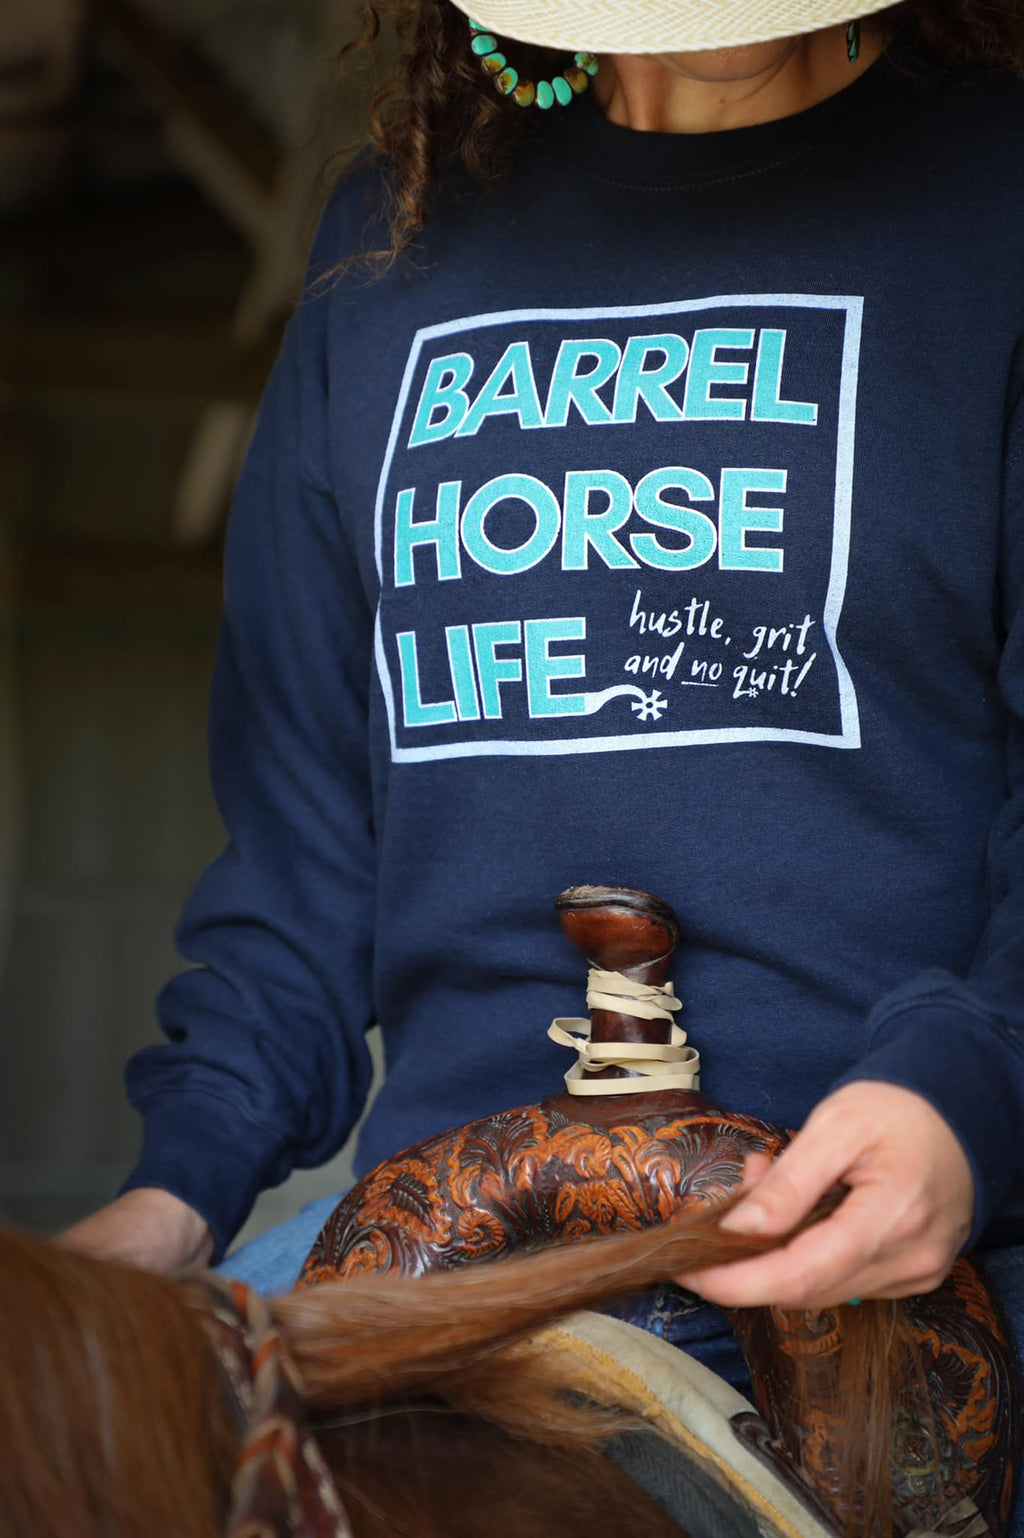 The Barrel Horse Life, Crewneck Sweatshirt